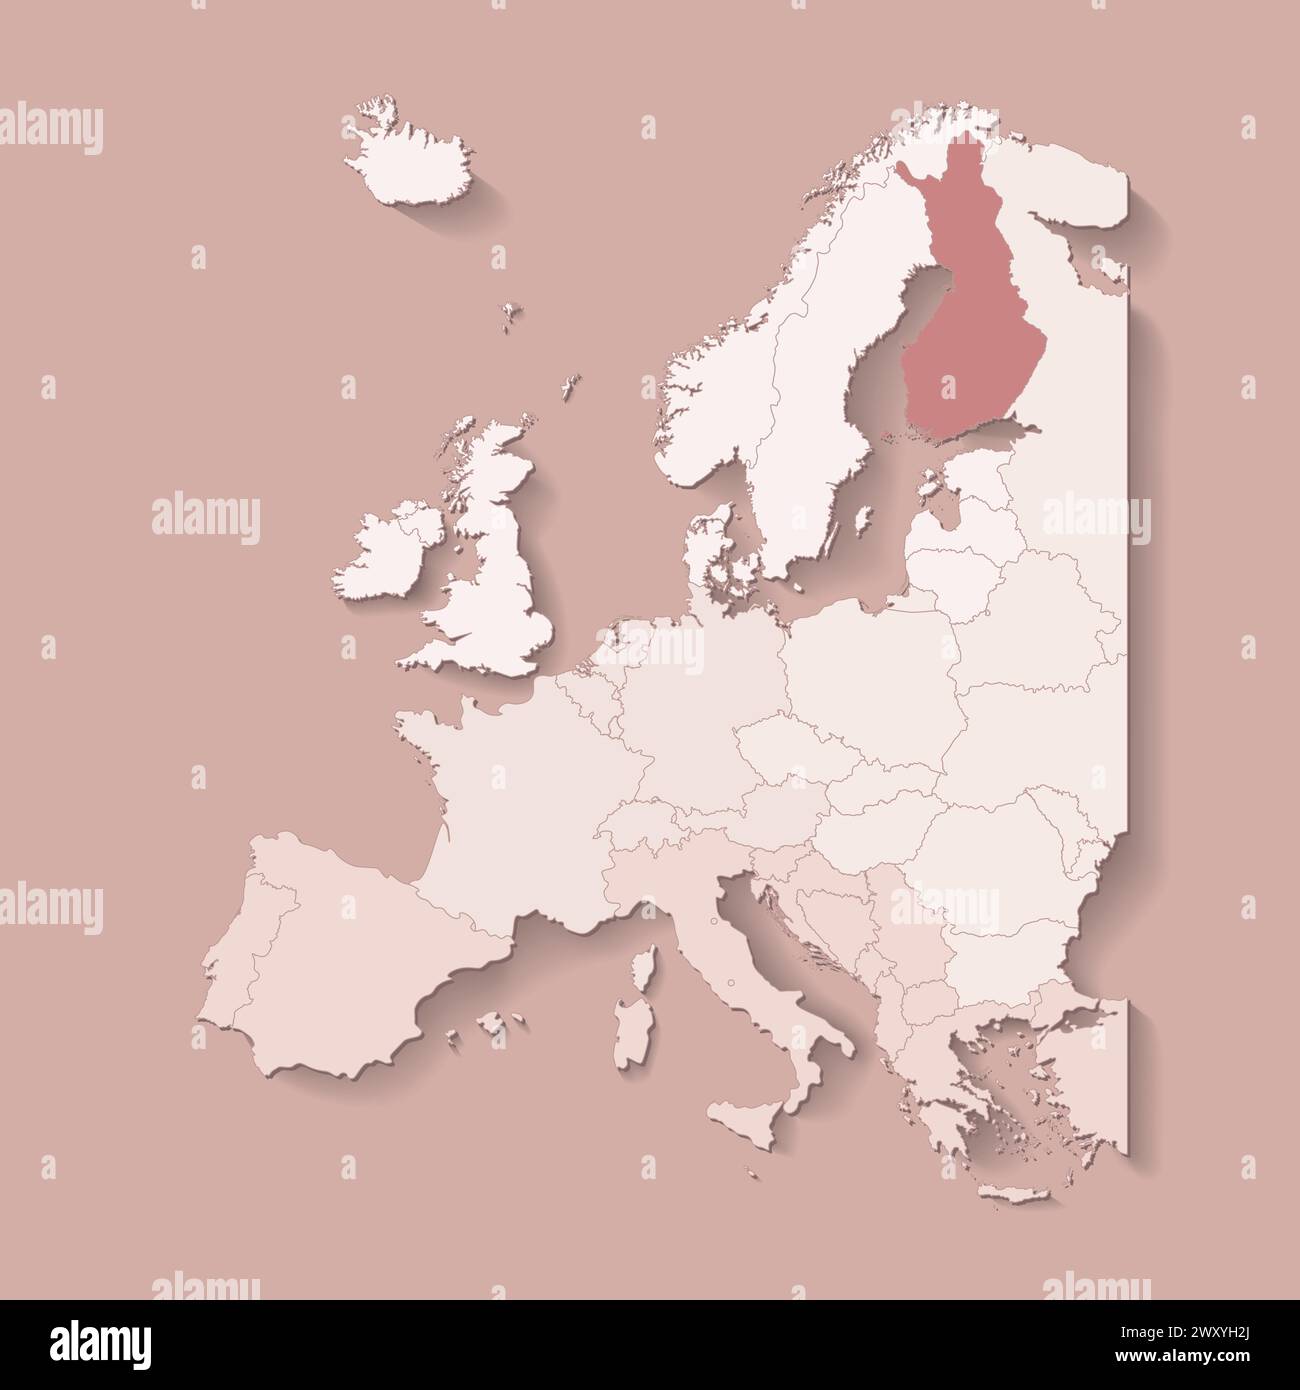 Illustrazione vettoriale con terra europea con confini di stati e paese contrassegnato Finlandia. Mappa politica di colore marrone con occidentale, sud e così via Illustrazione Vettoriale